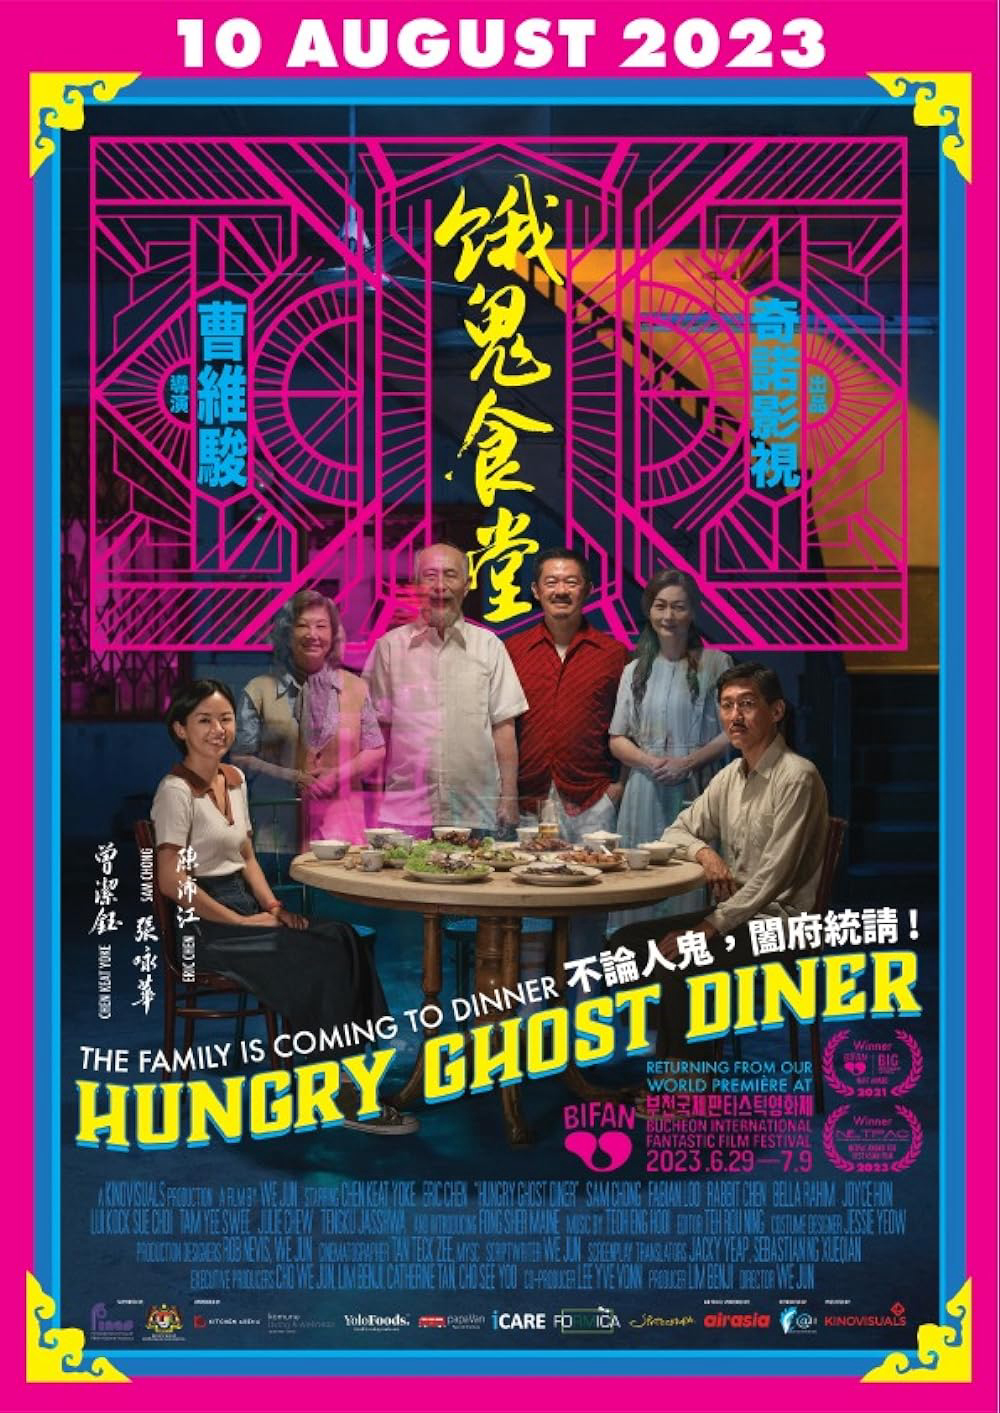 Quán ăn quỷ đói - Hungry Ghost Diner